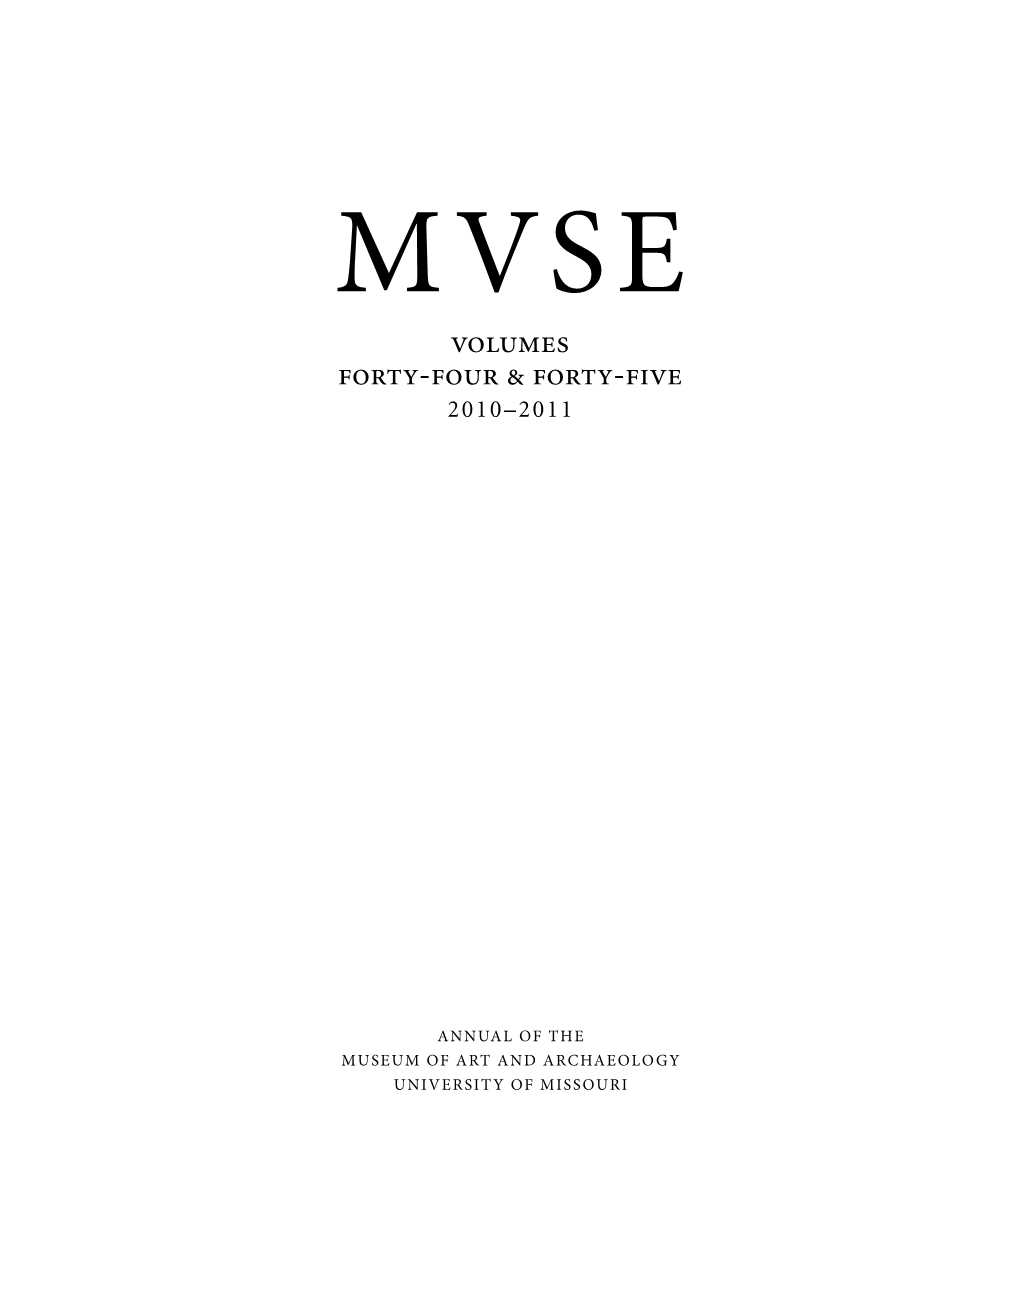 Muse44-45.Pdf (8.708Mb)